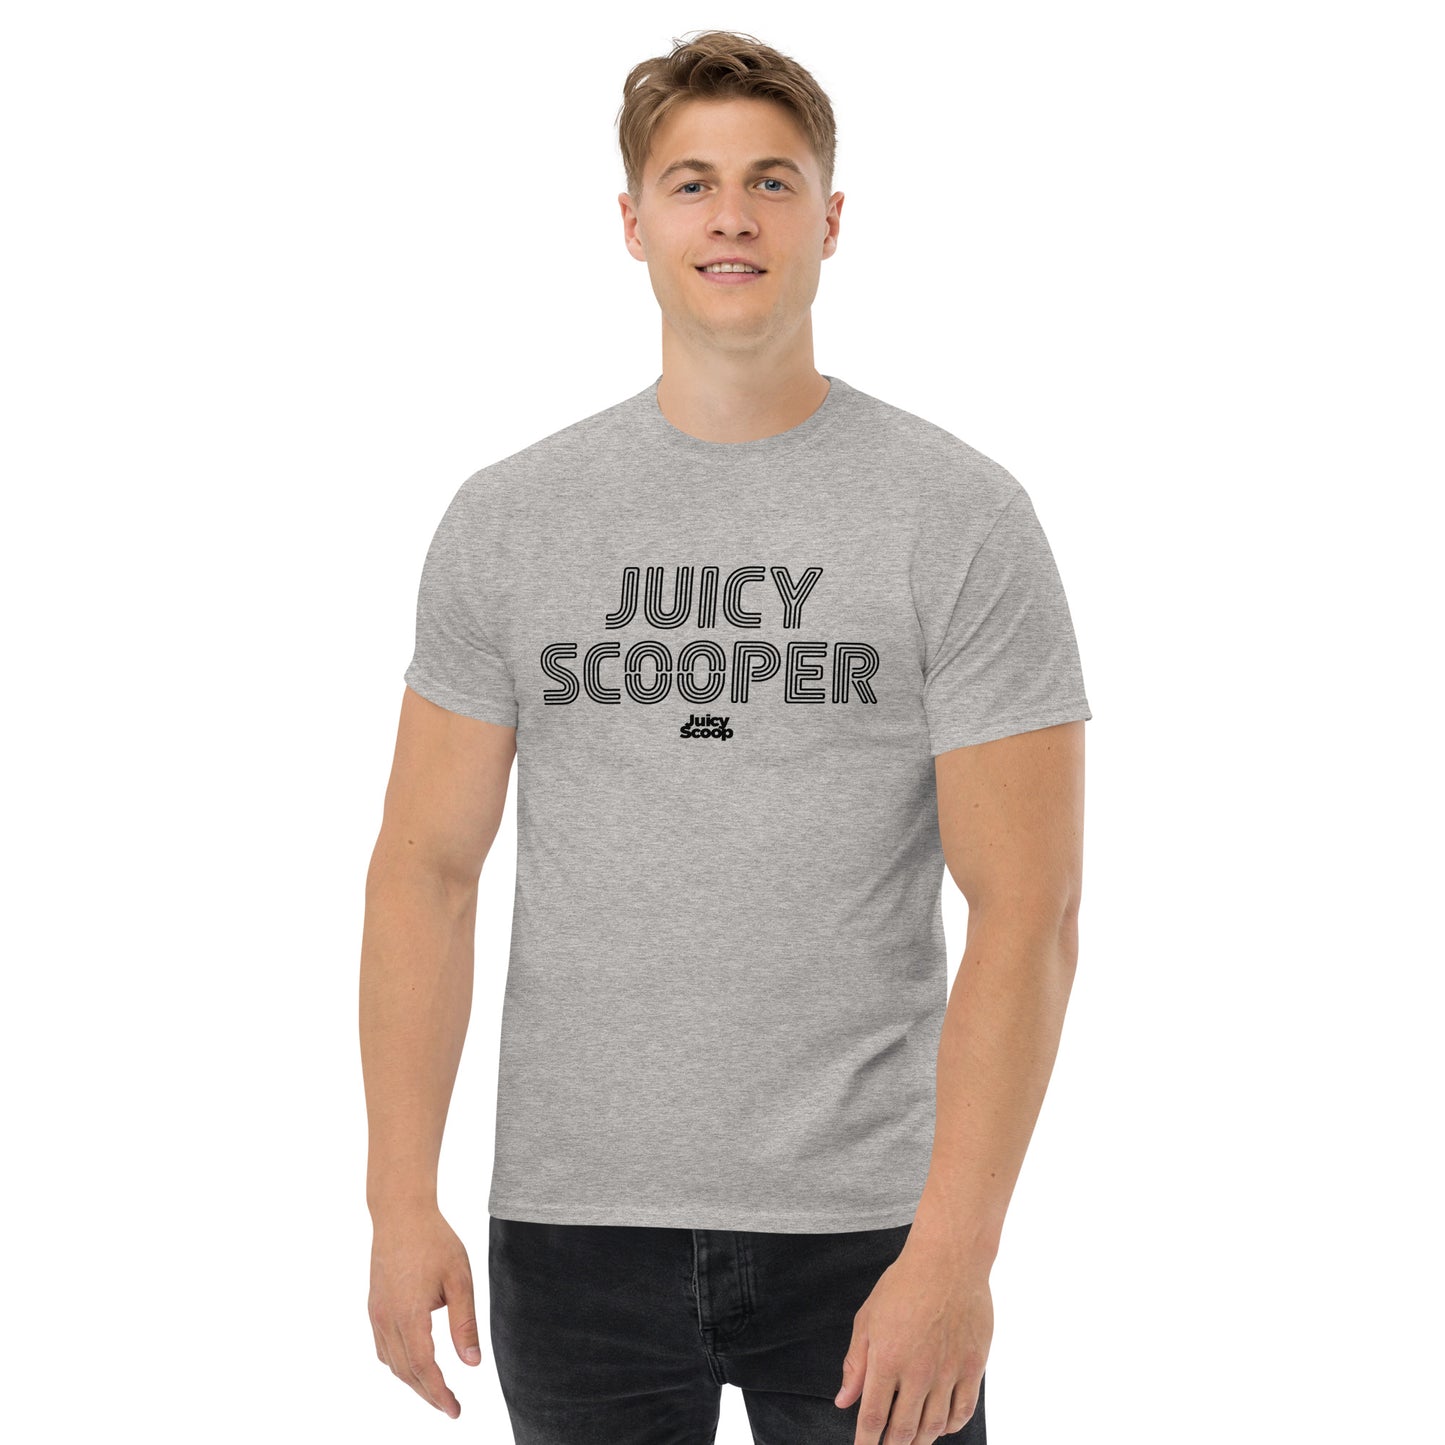 Juicy Scooper Men's Classic Tee